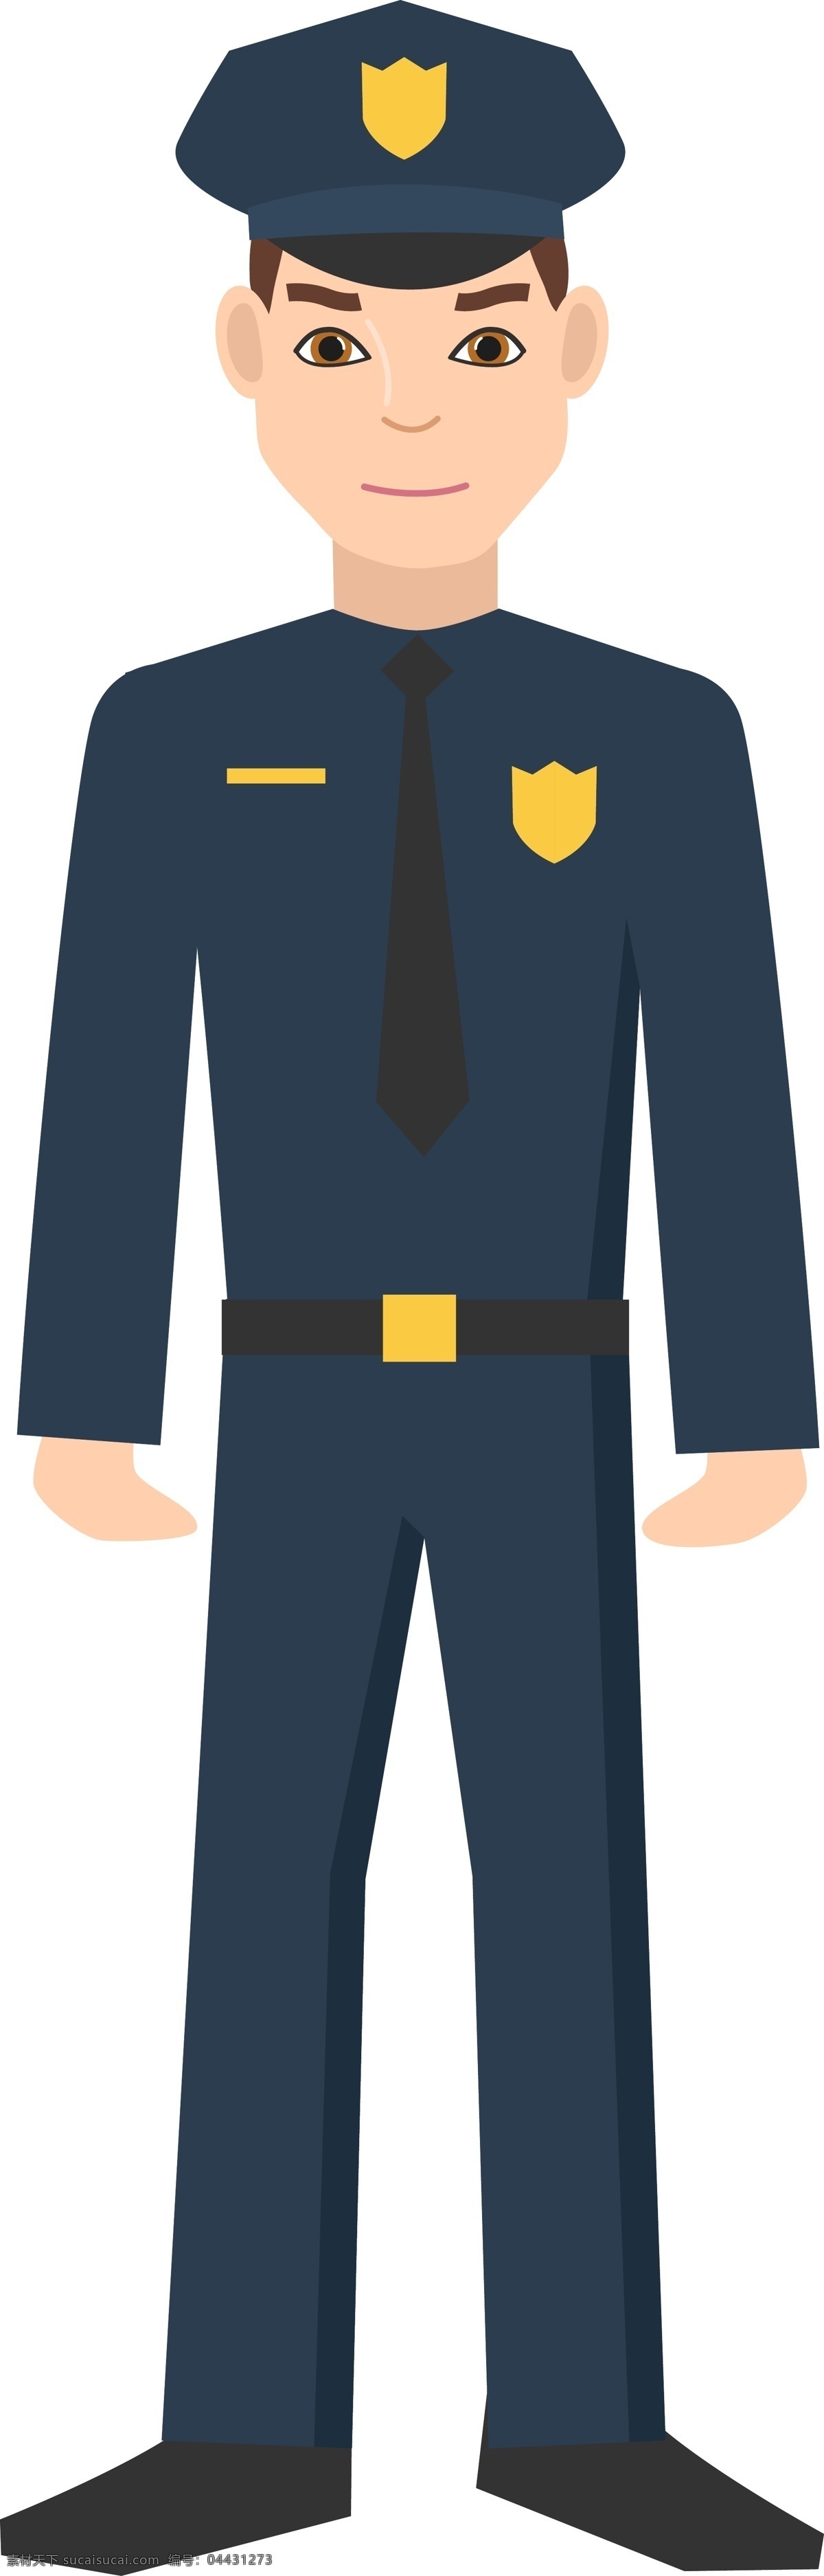 人民警察插画 公务员 警员 办公人员 人民警察 人物图库 职业人物